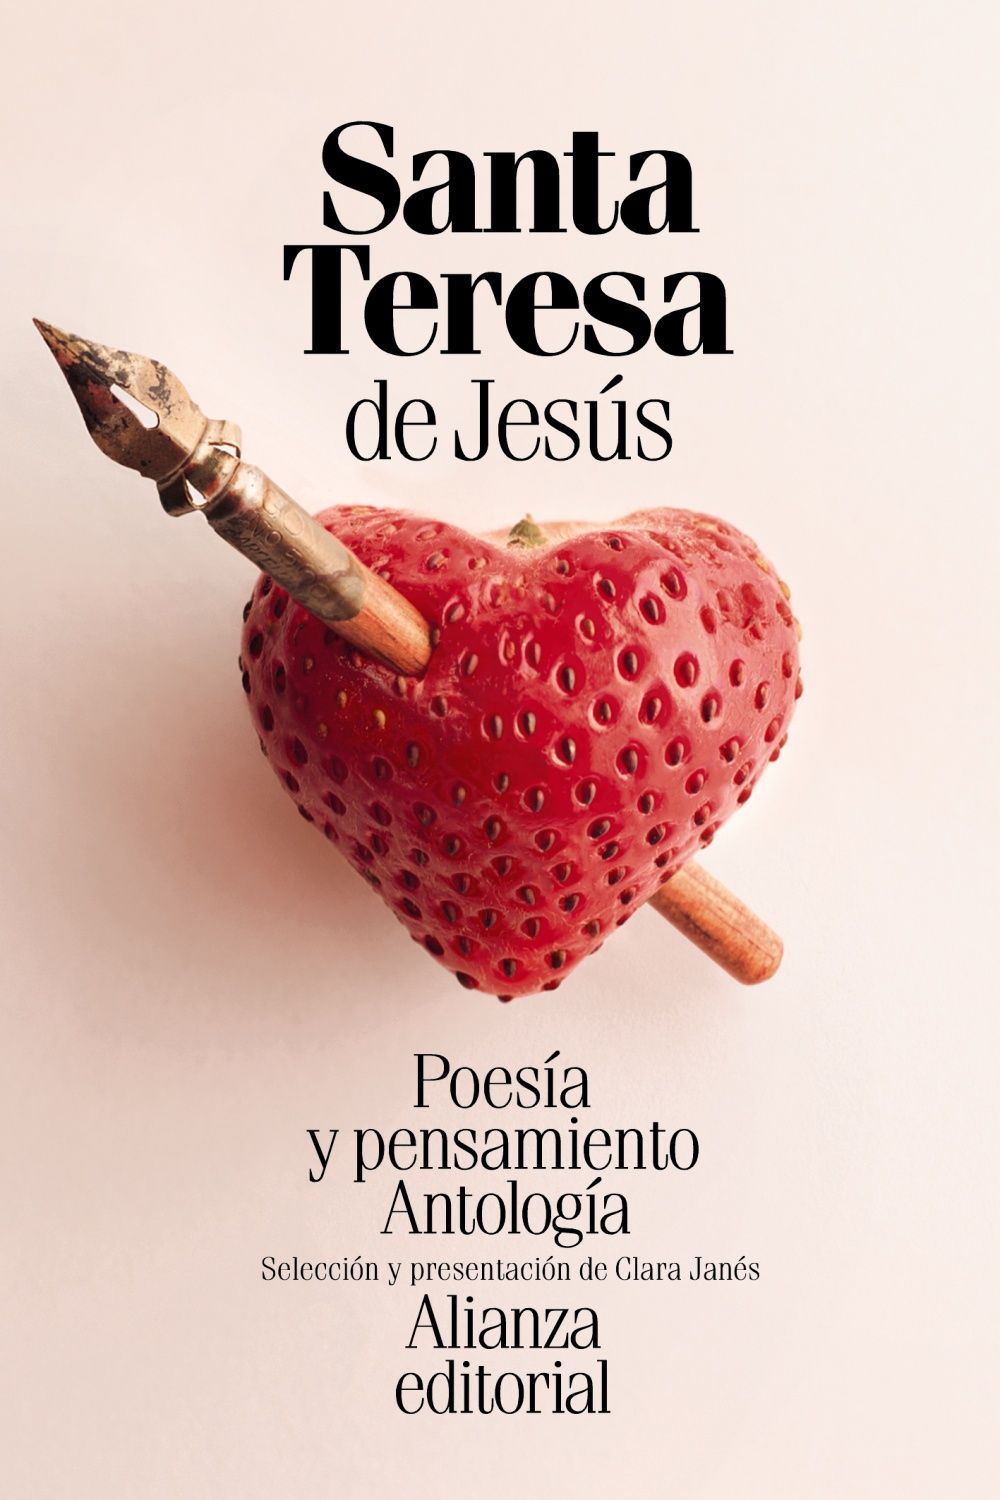 POESÍA Y PENSAMIENTO DE SANTA TERESA DE JESÚS. ANTOLOGÍA